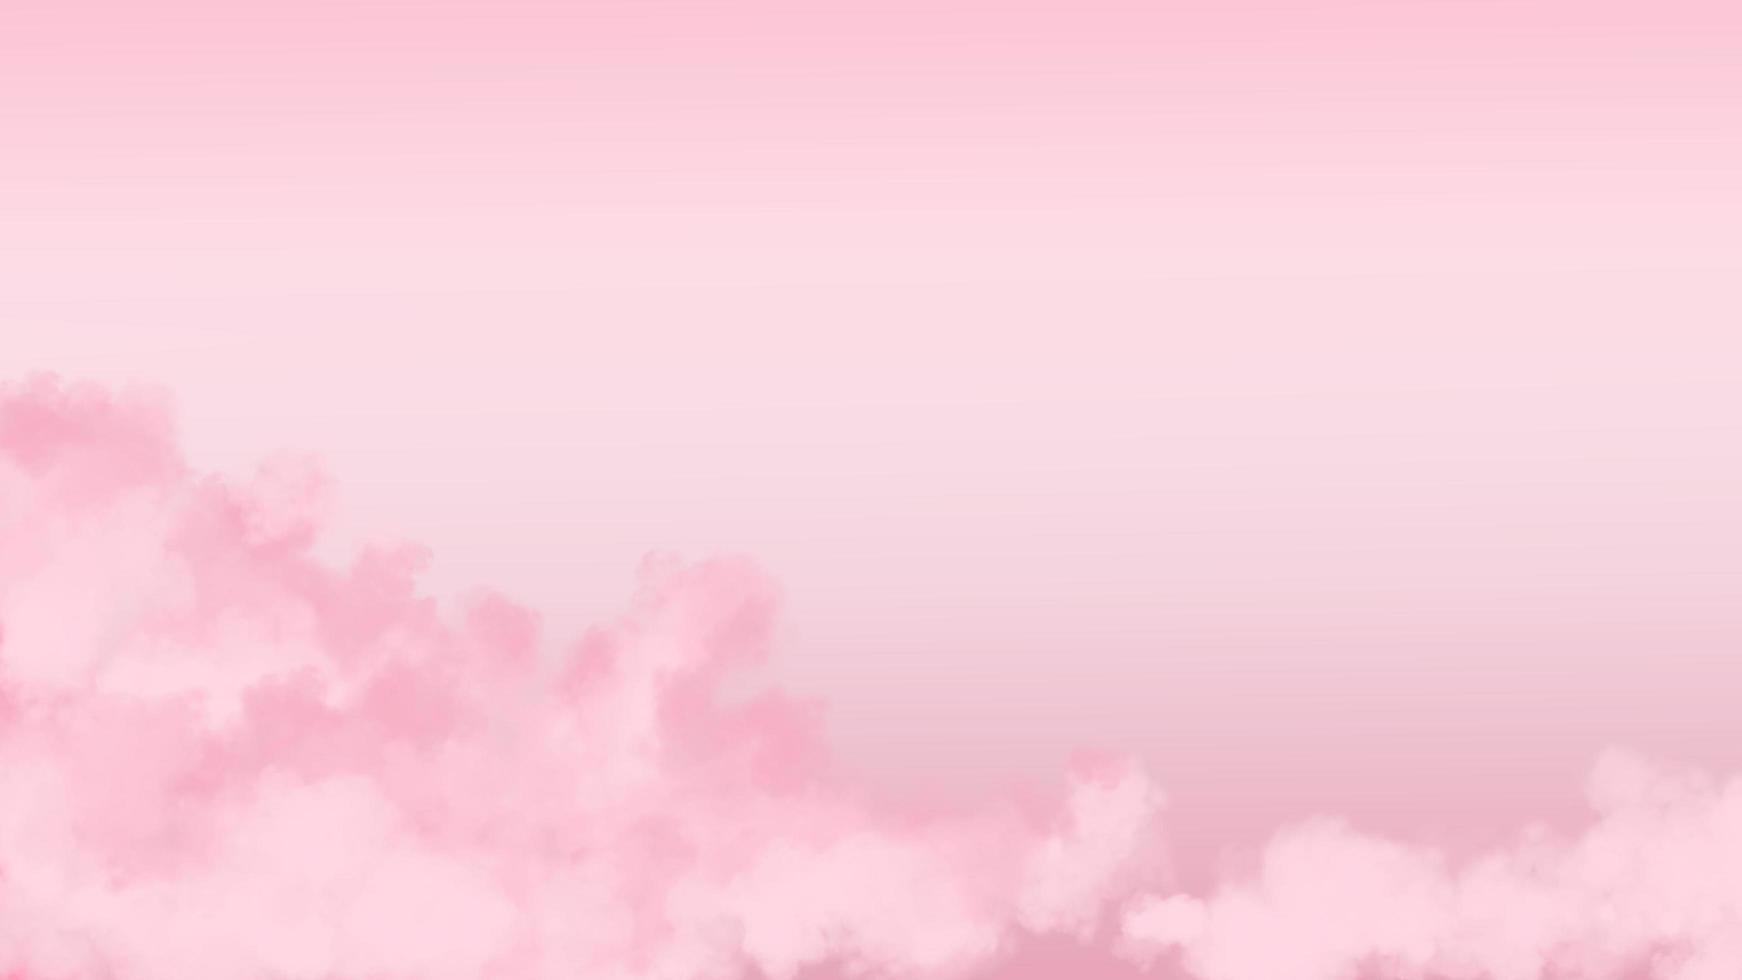 realistische roze pluizige wolkenillustratie. zoete achtergrond voor uw inhoud zoals Valentijnsdag, bruiloft, liefde, paar, romantiek, romantisch, wenskaart, uitnodiging, promotie, advertentie enz. foto